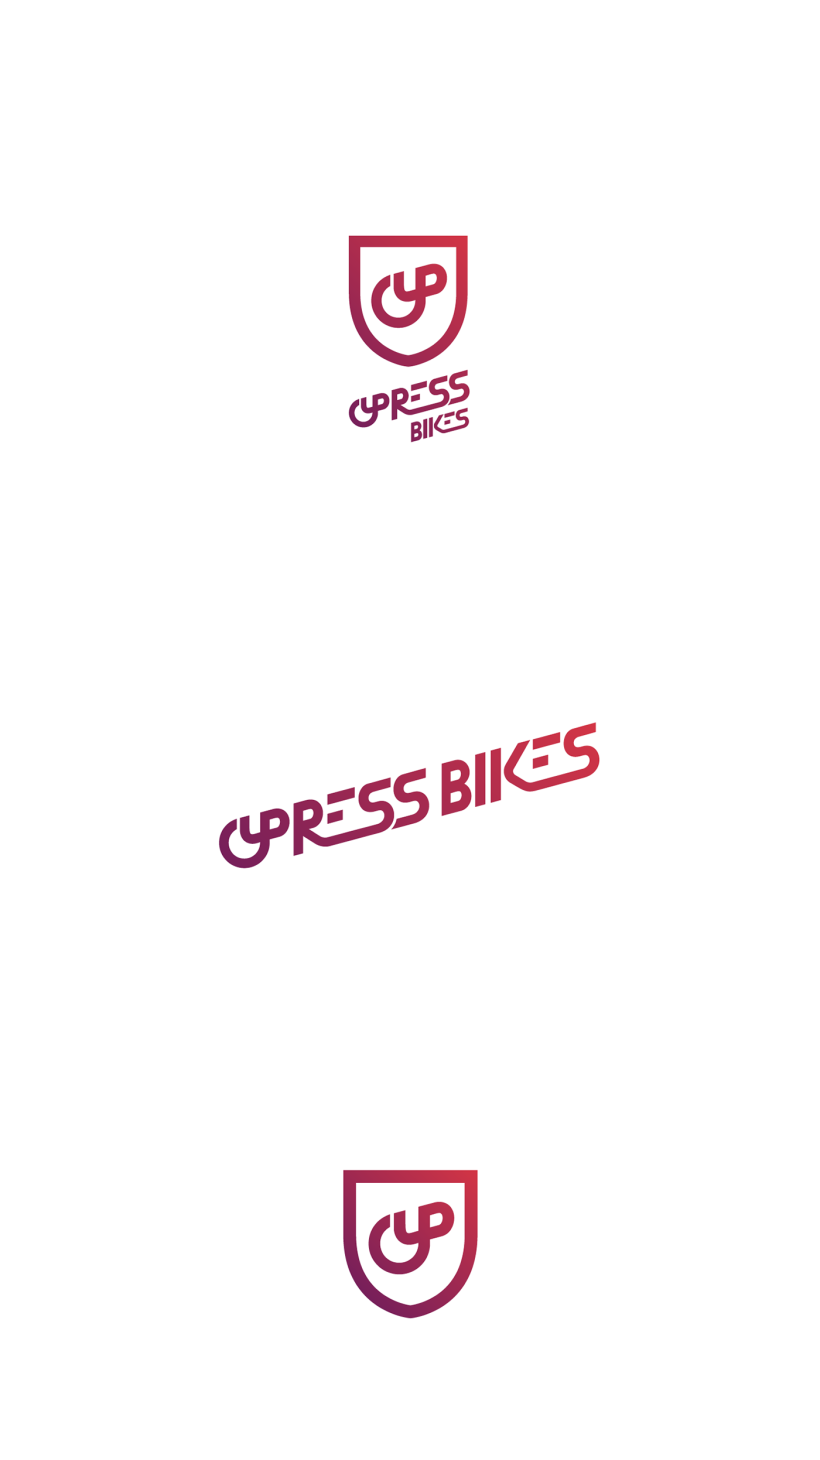 Cypress Bikes | Rebranding 2